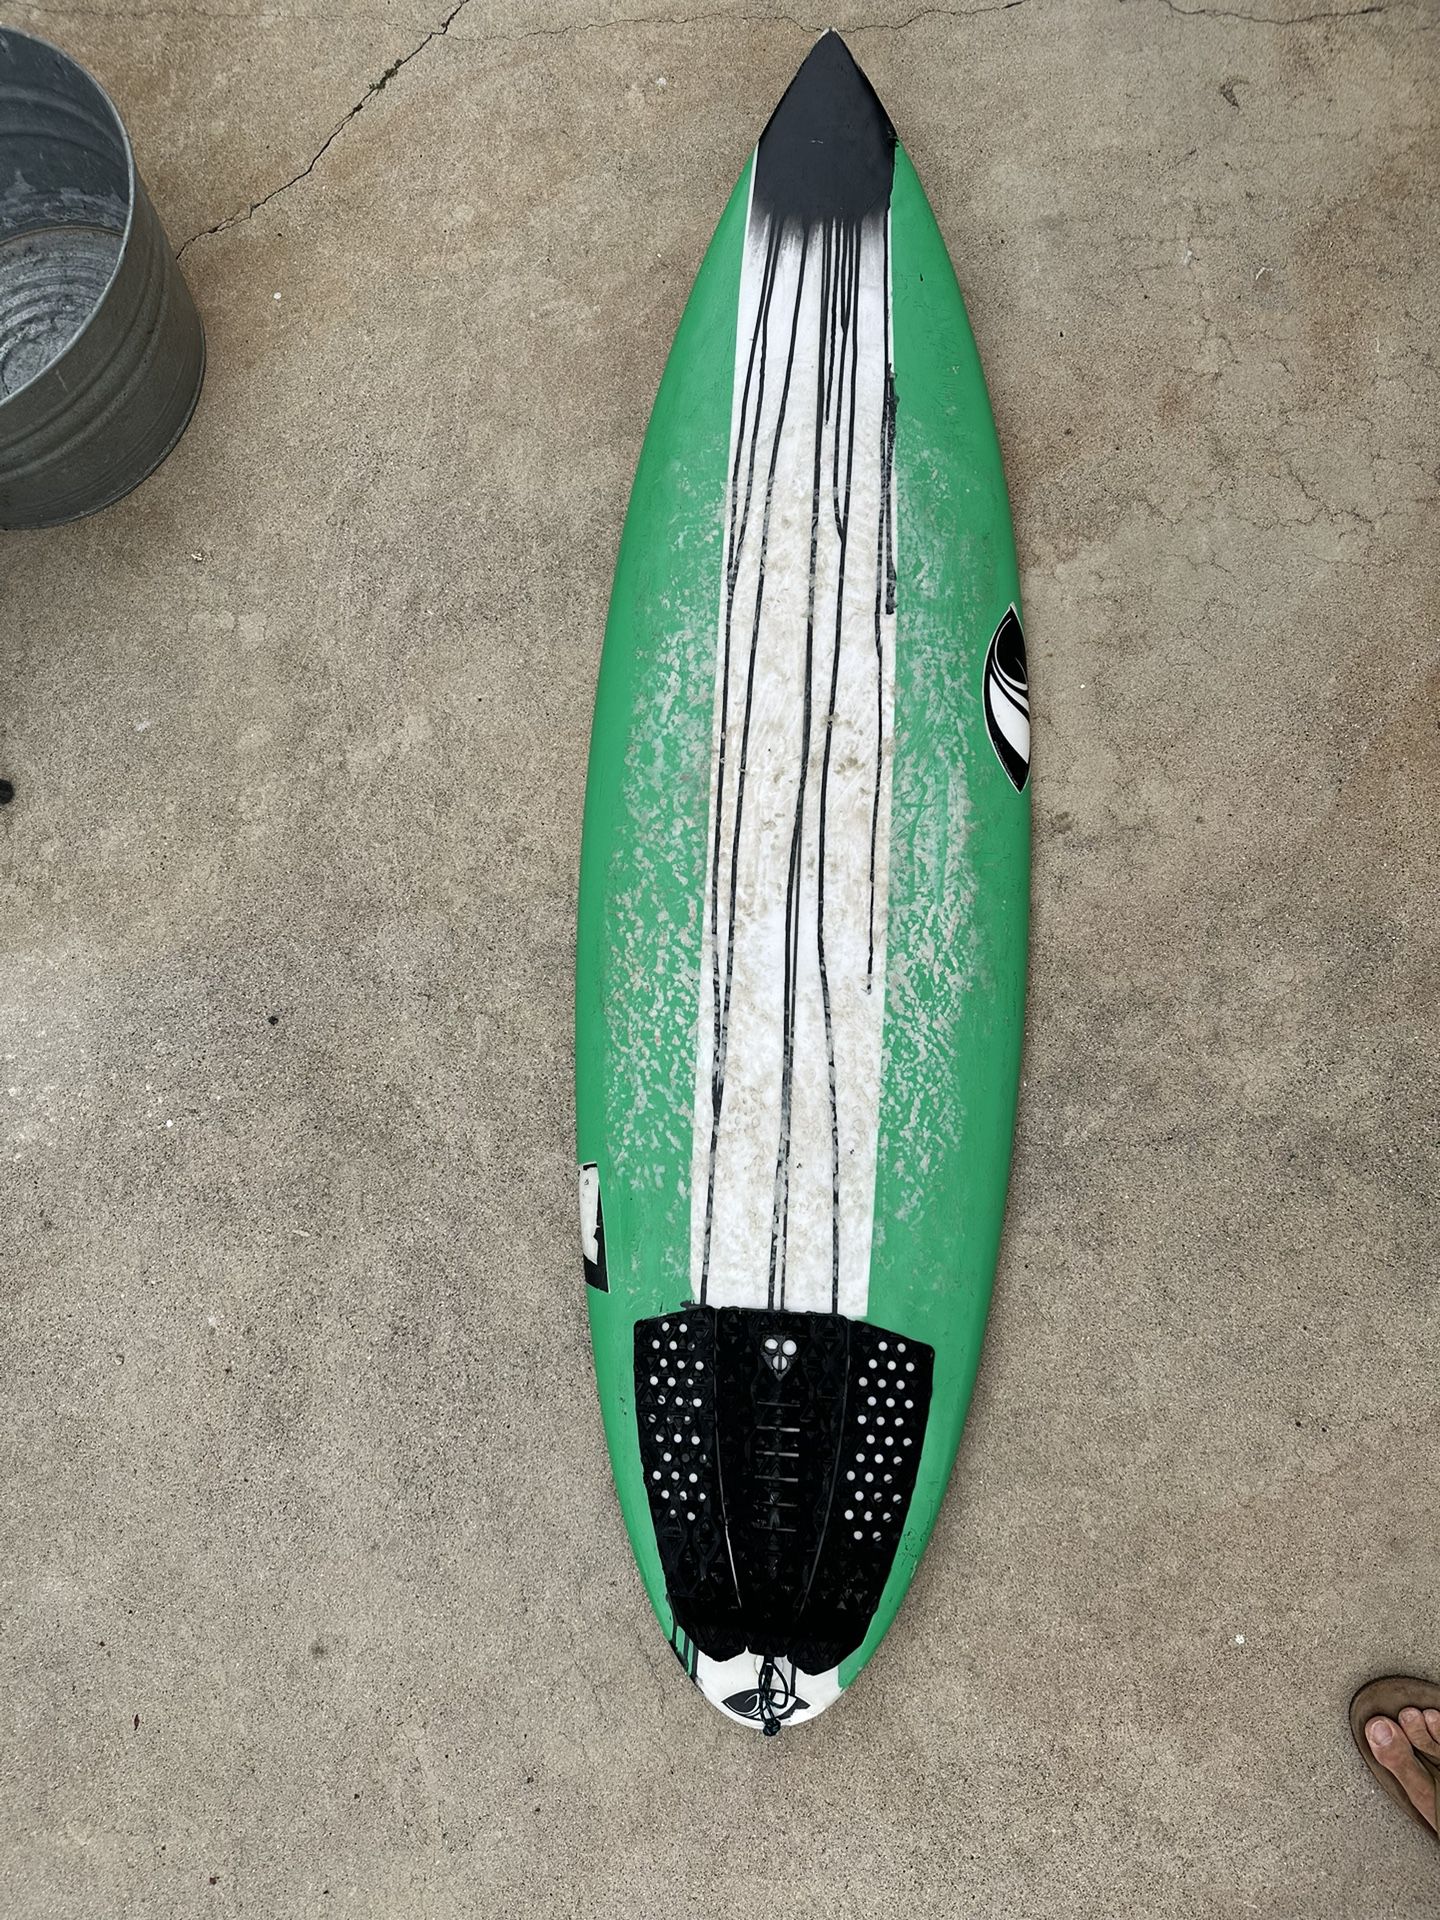 Sharpeye Surfboard 6’0” 30.6L